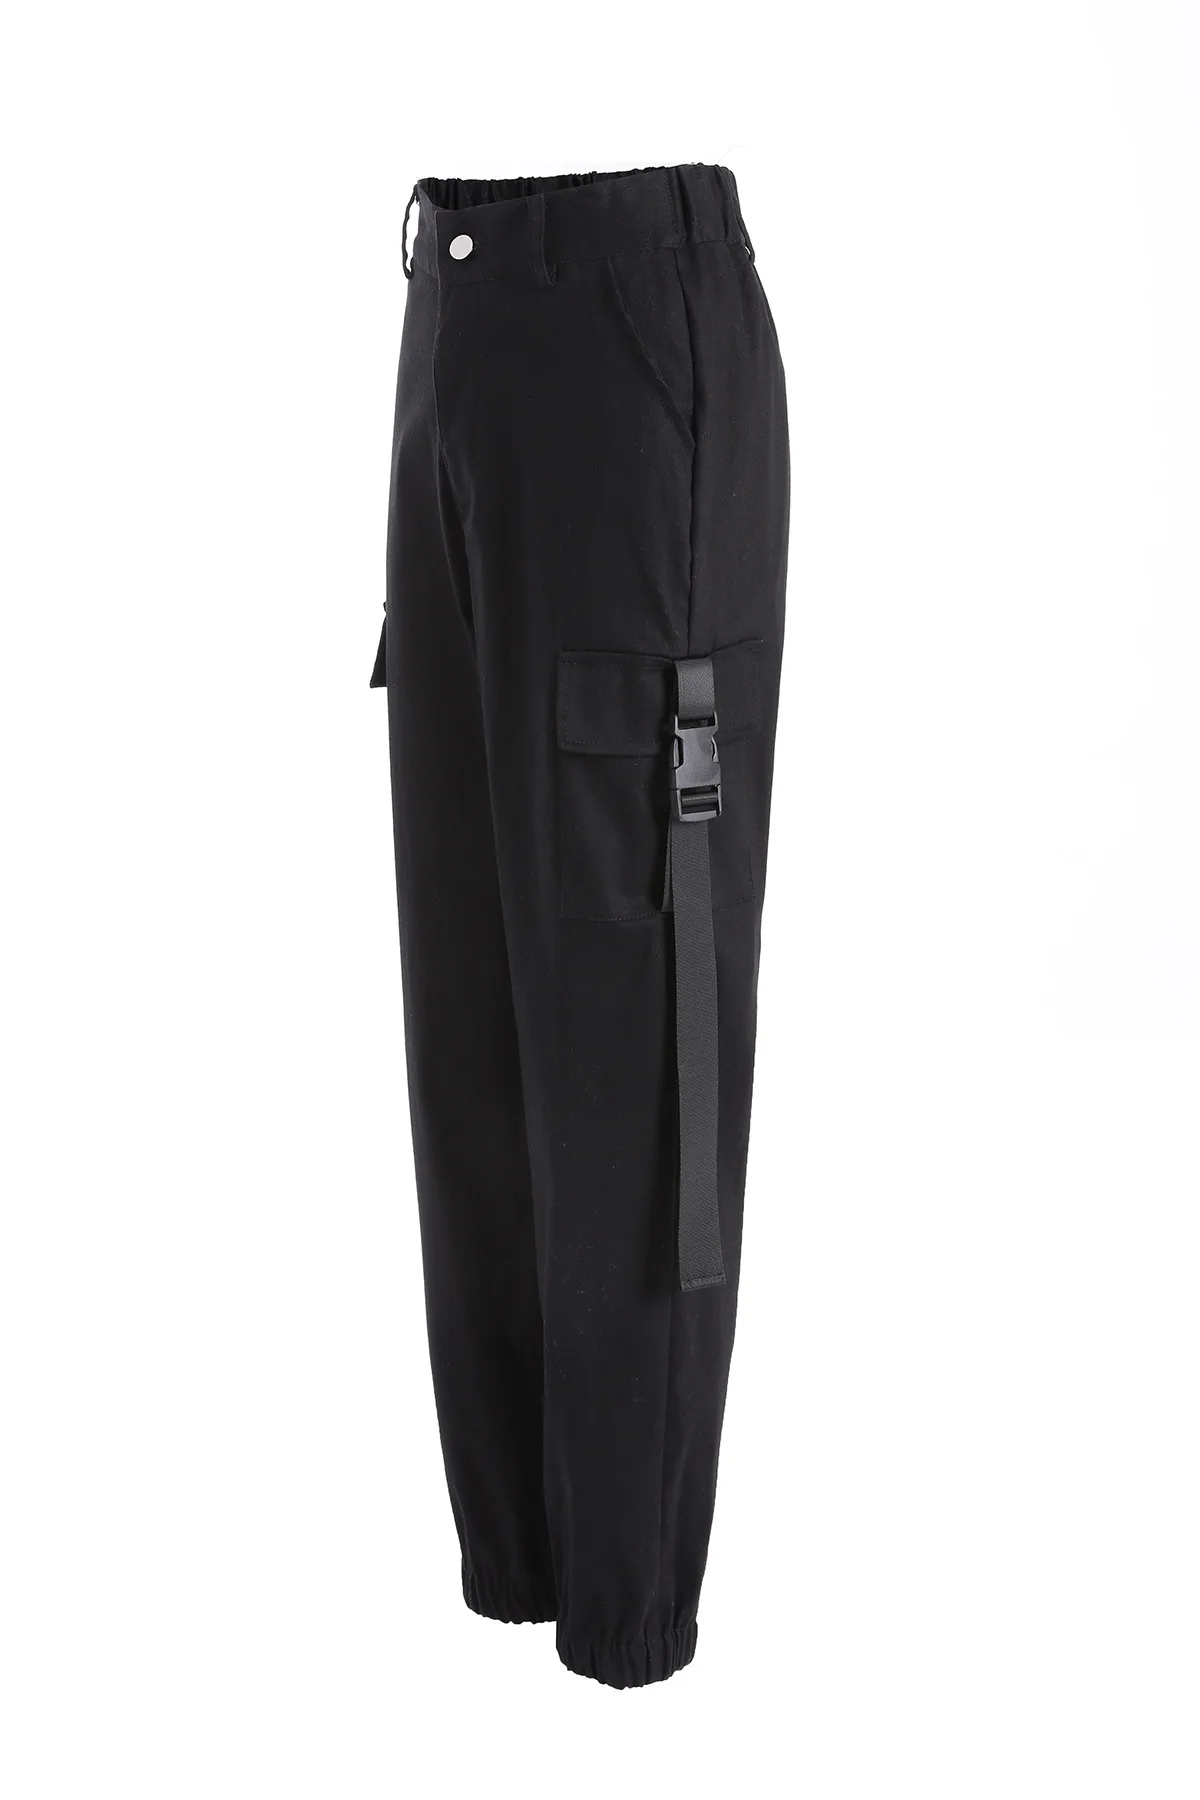 XUANSHOW уличная штаны-карго для женщин Повседневное джоггеры Высокая талия Свободные женские мотобрюки корейский стиль дамы брюки для девоче